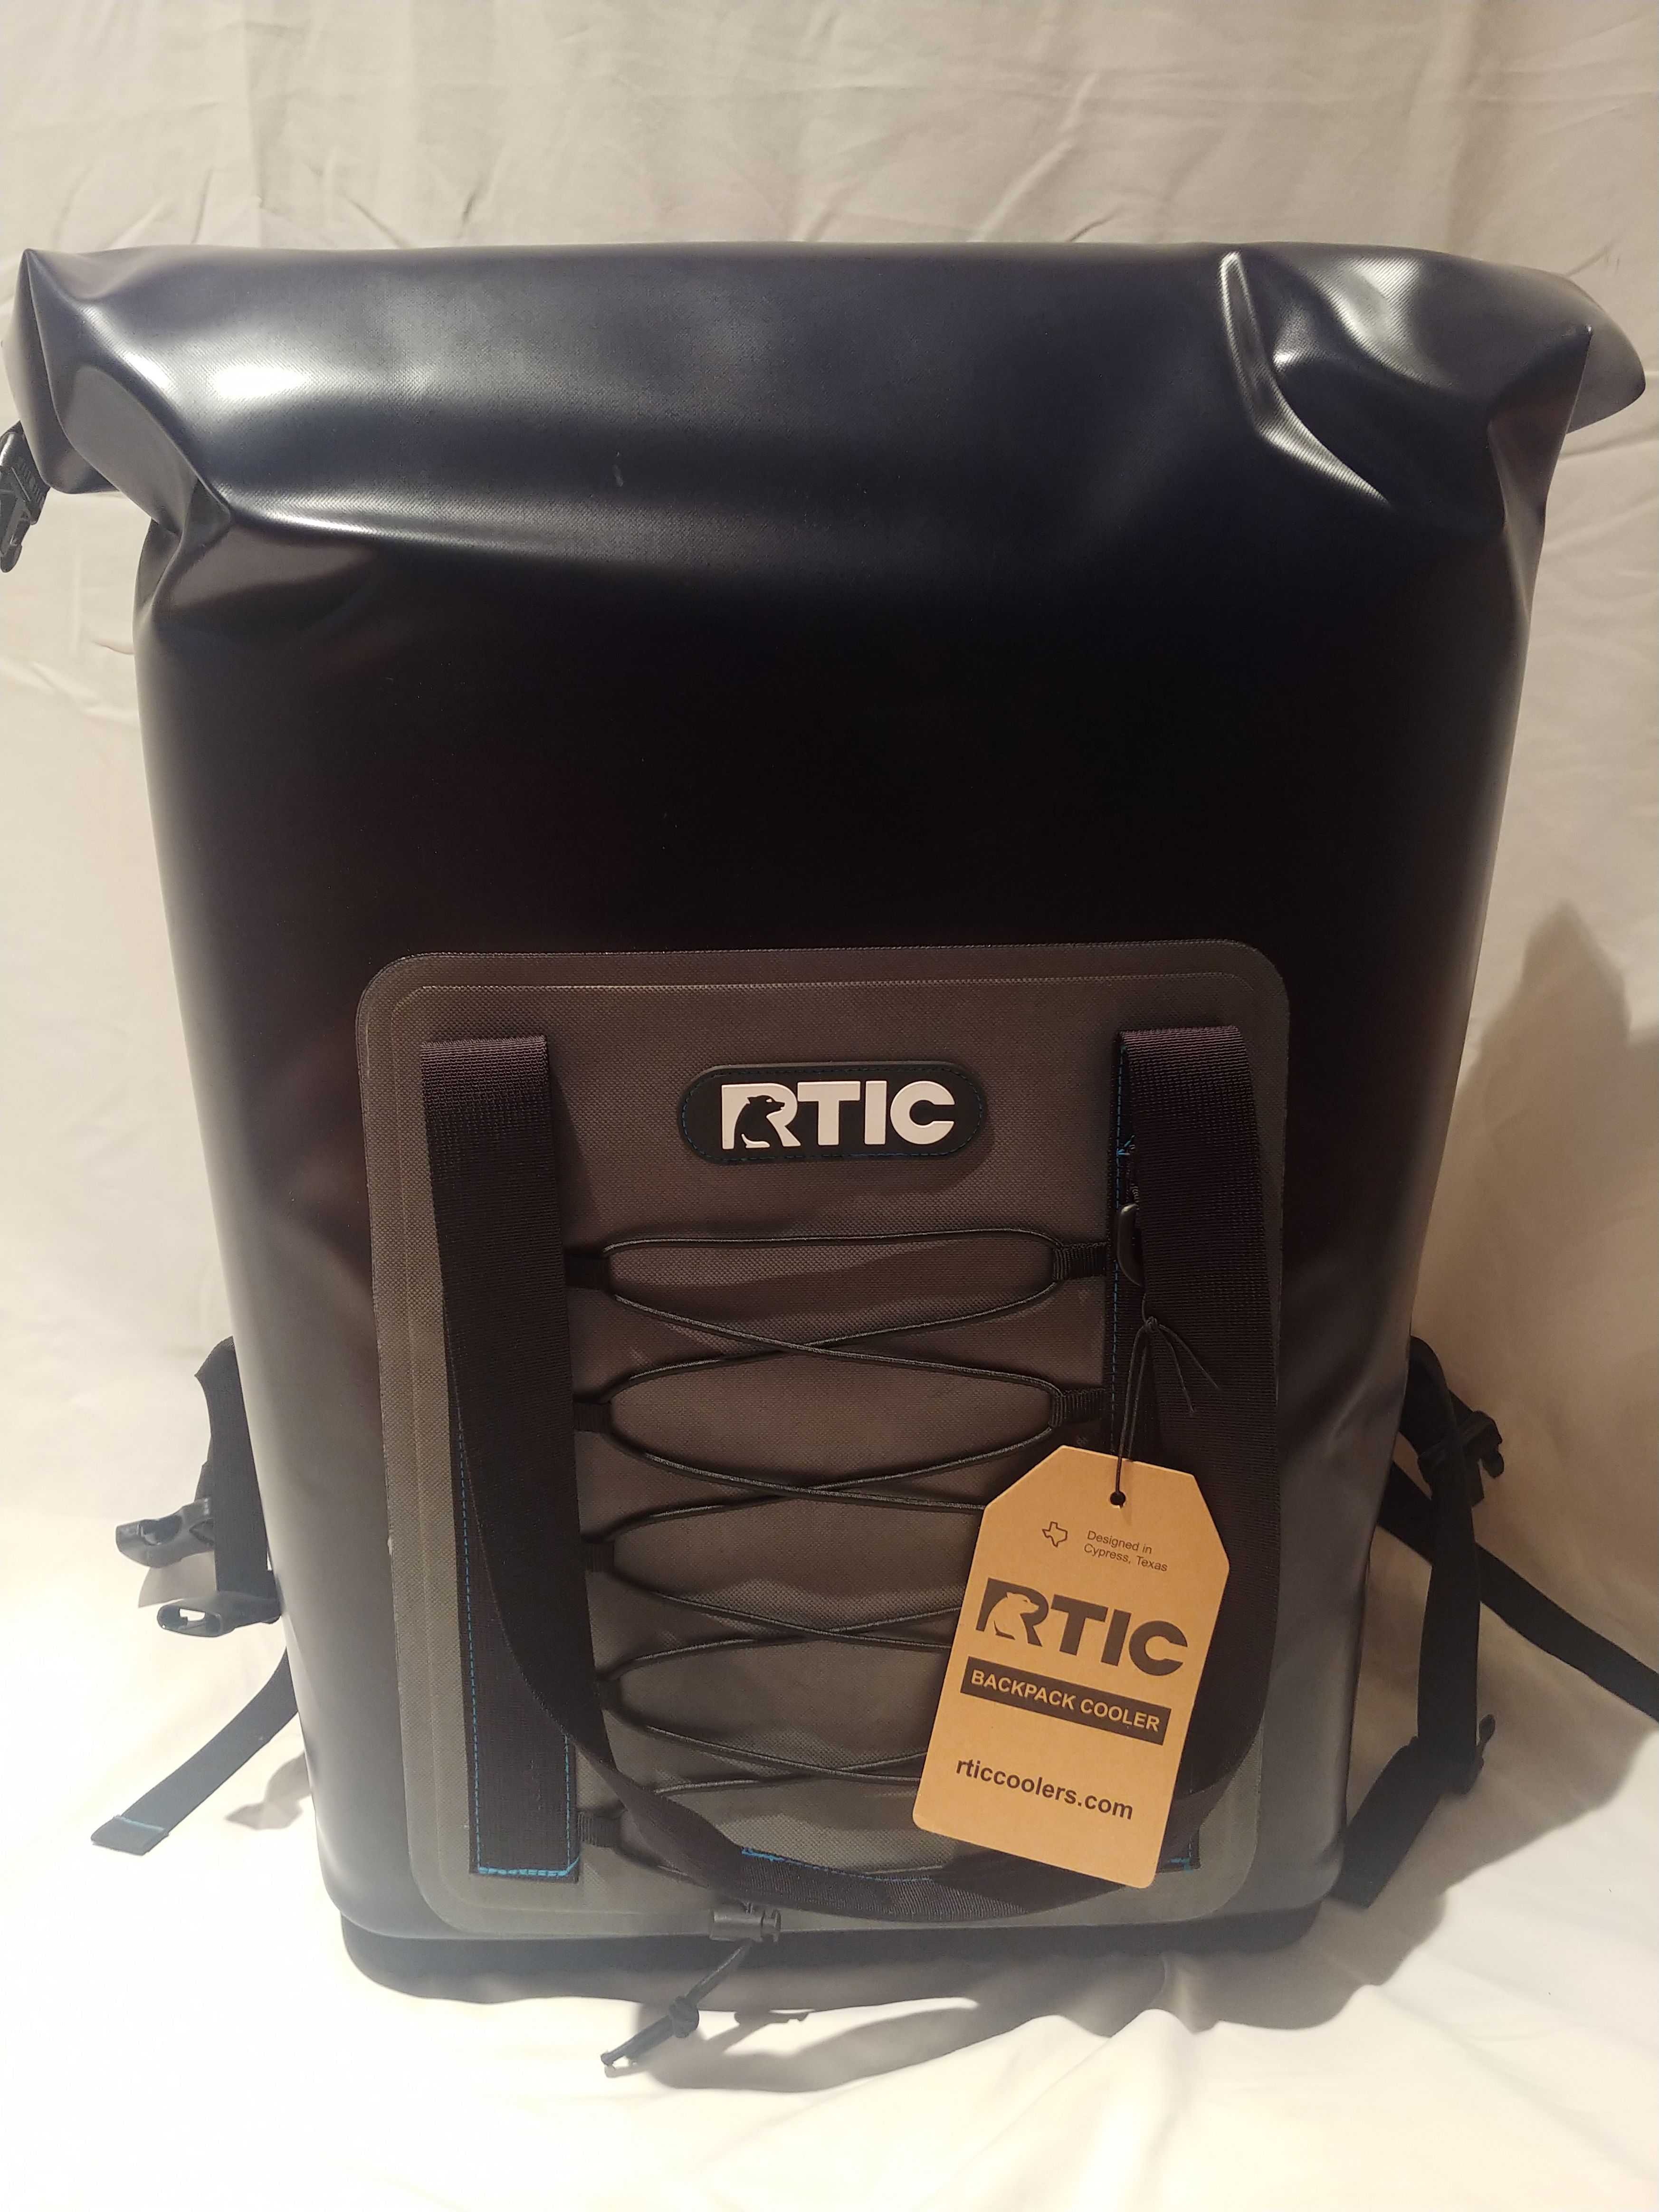 RTIC Backpack Cooler Black